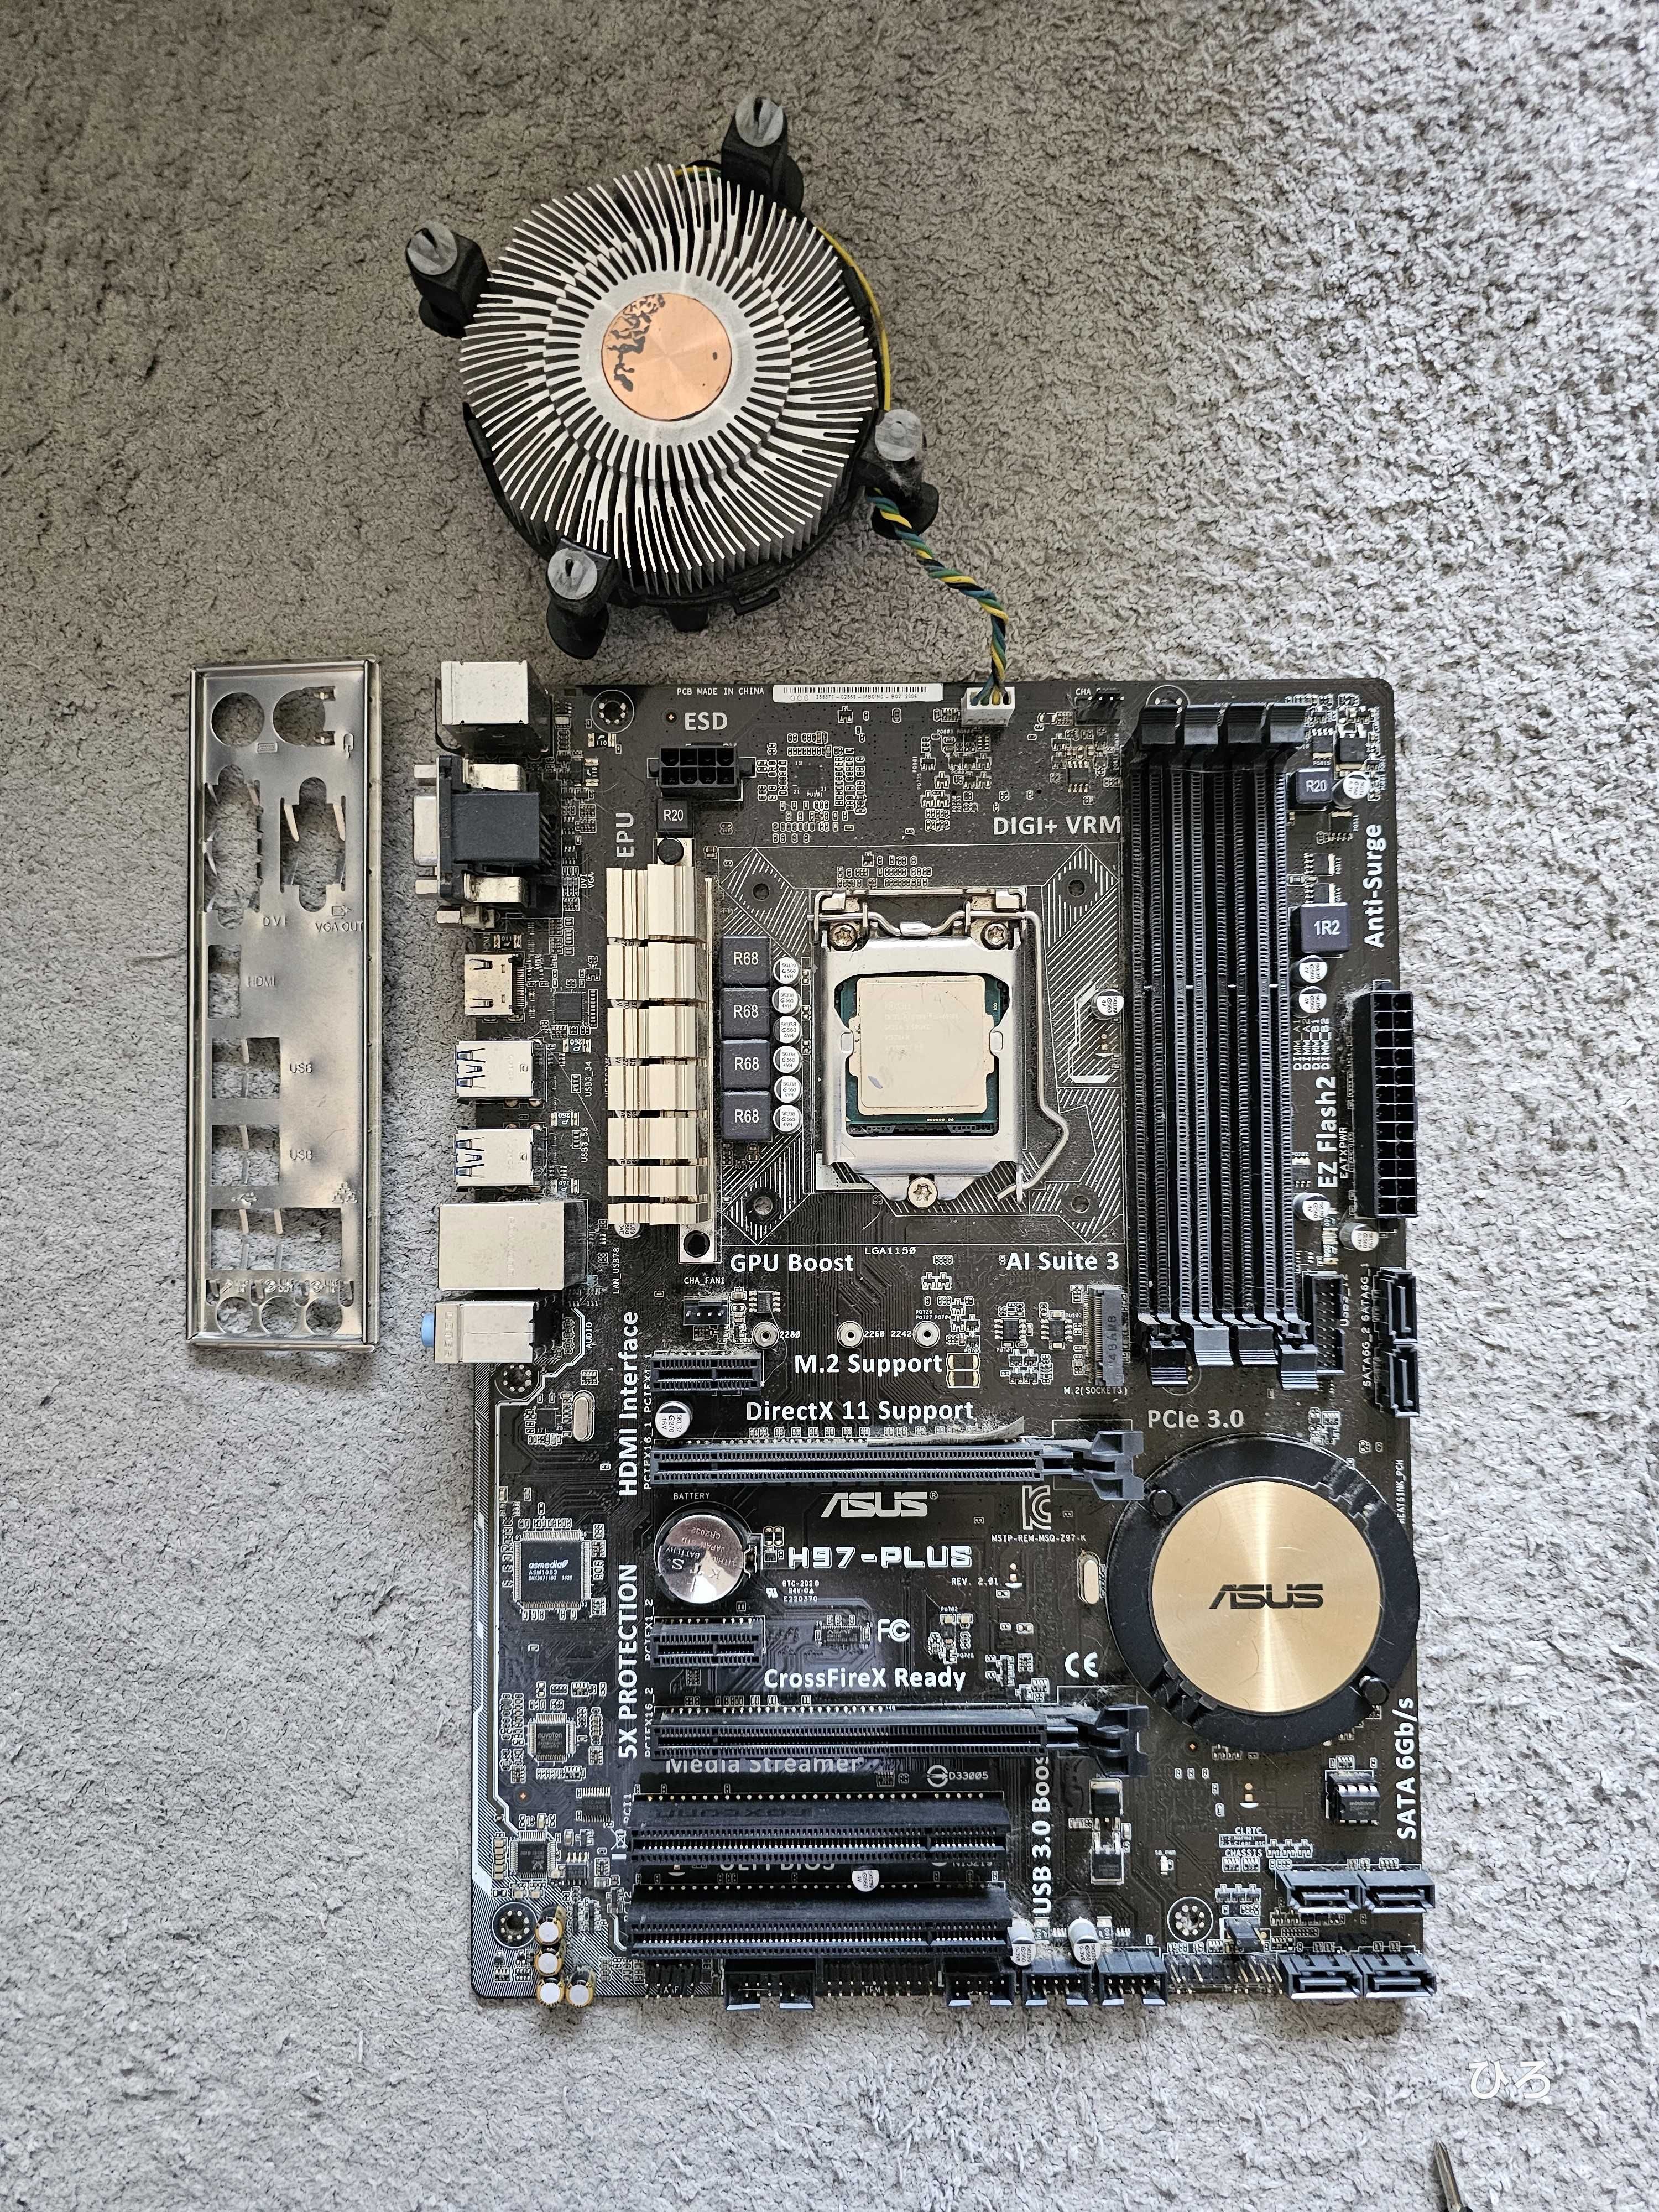 CPU + Mobo Intel core i5 4690k + Asus H97-PLUS